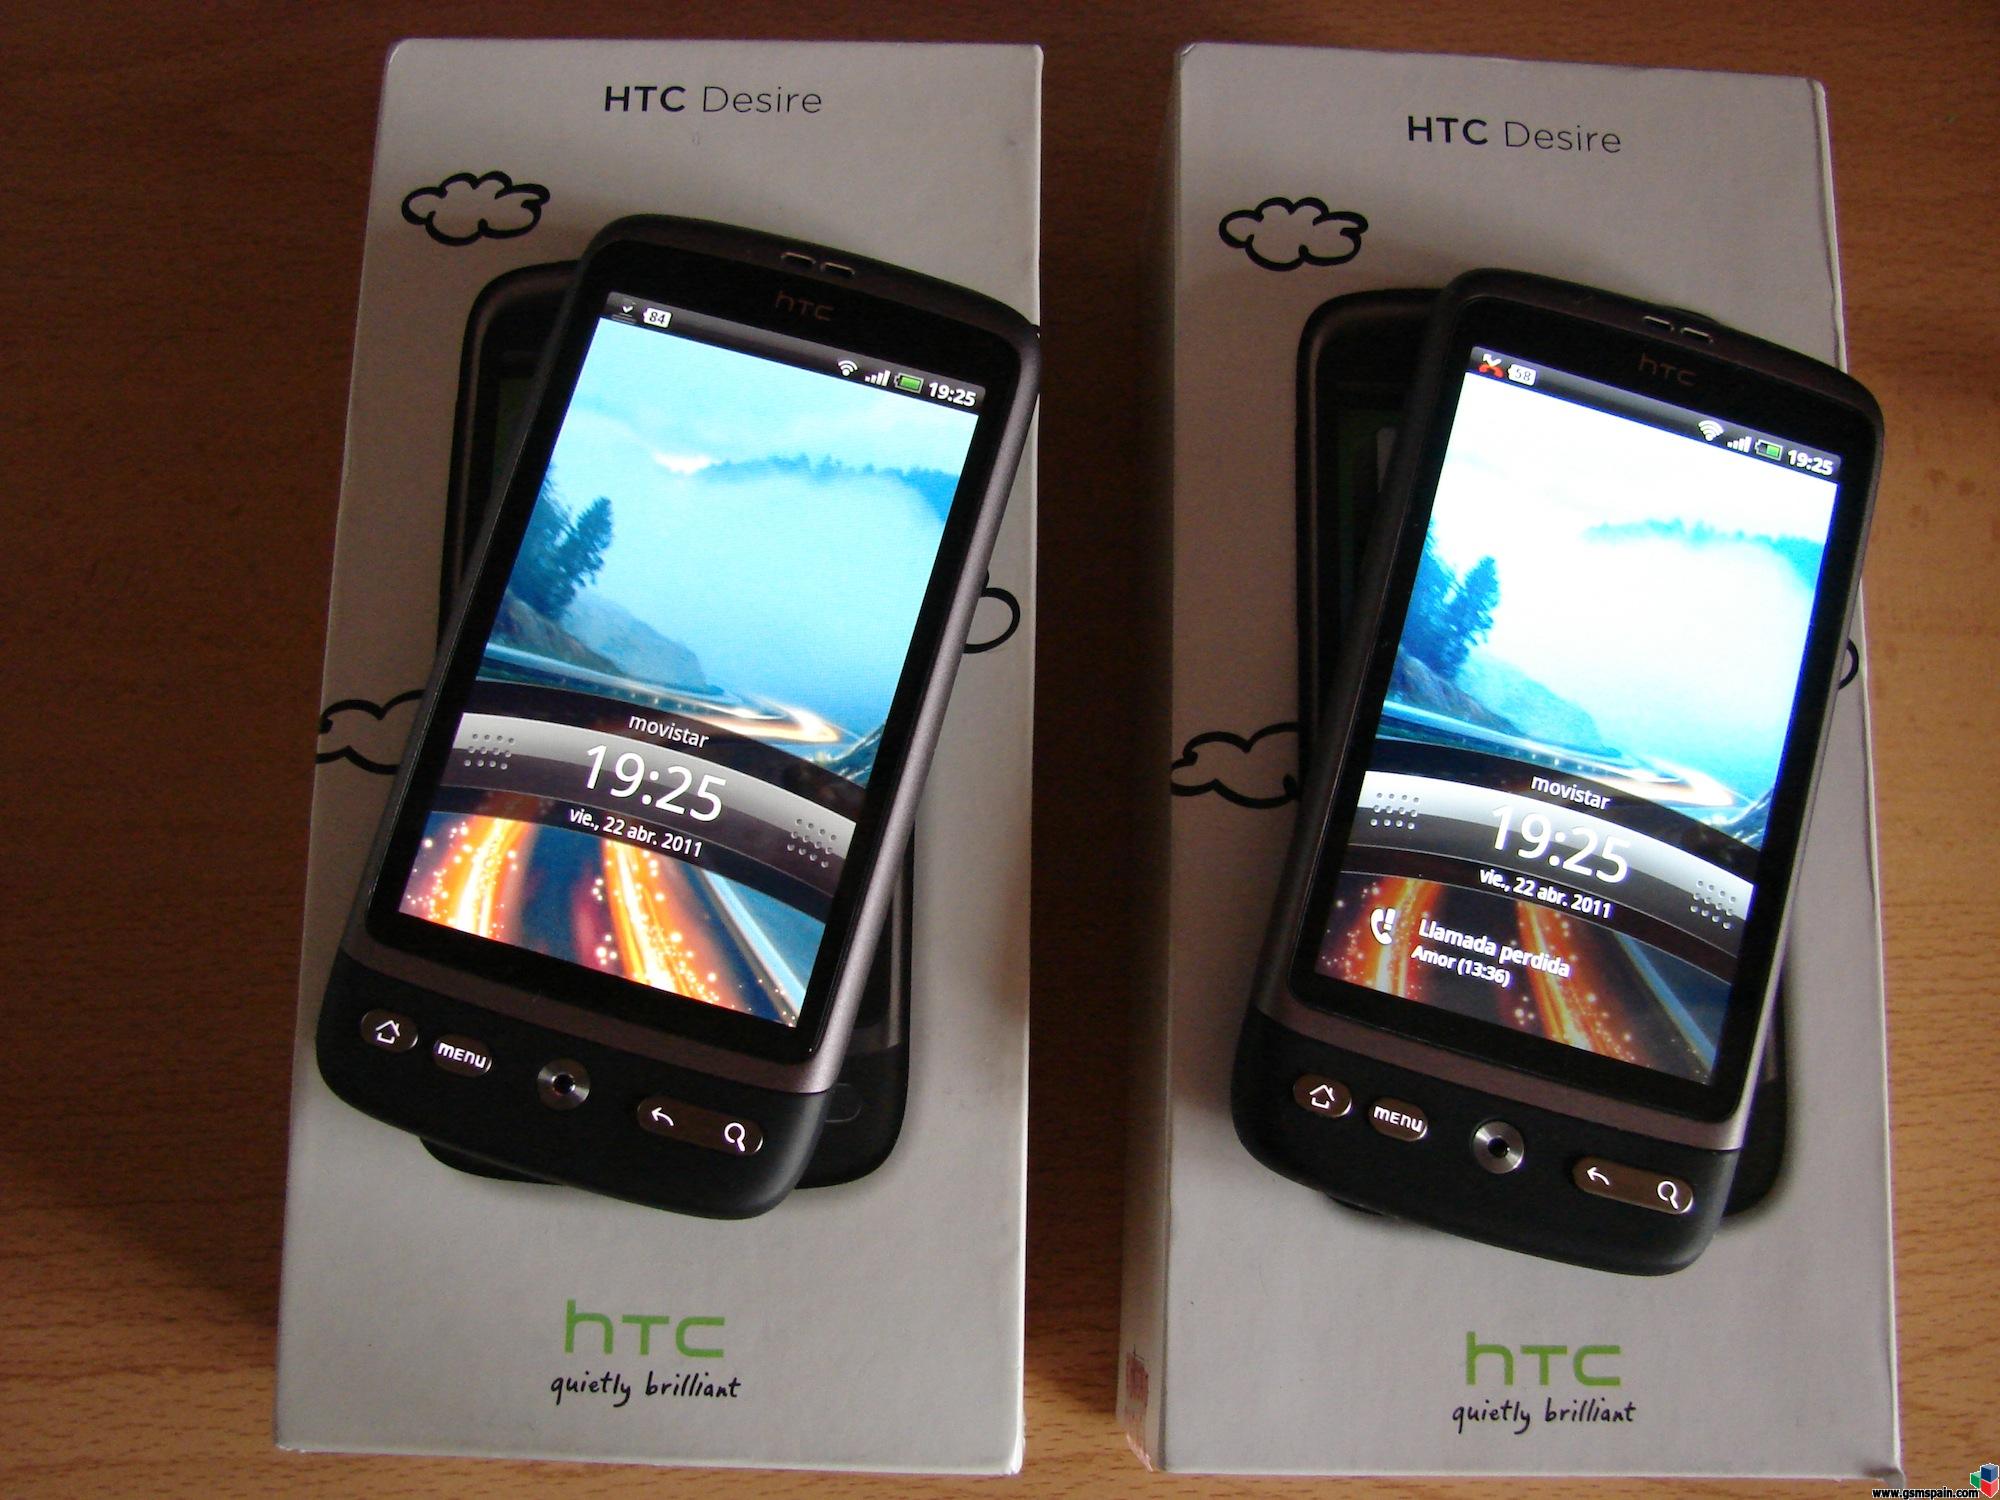 [VENDO] [CAMBIO] Htc Desire Orange (LIBERADA A ESTRENAR) y HTC Desire ORANGE (Liberada usada)